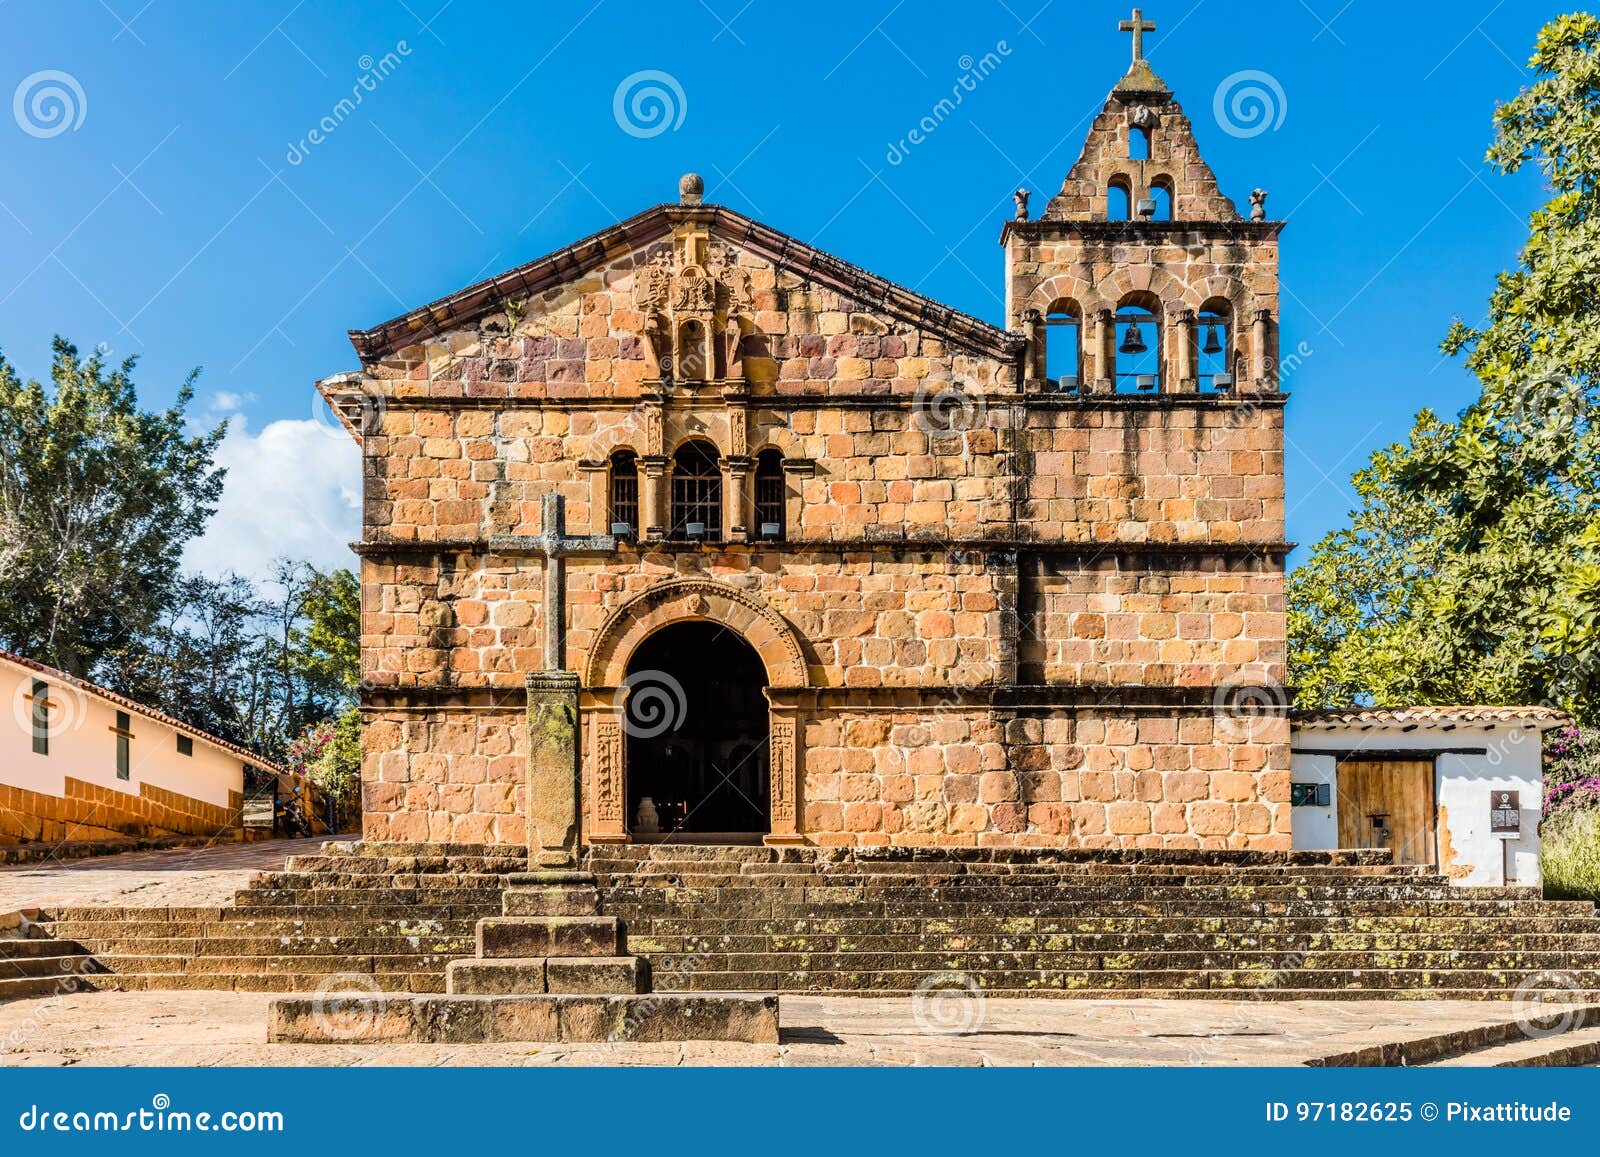 capilla de santa barbara barichara santander colombia